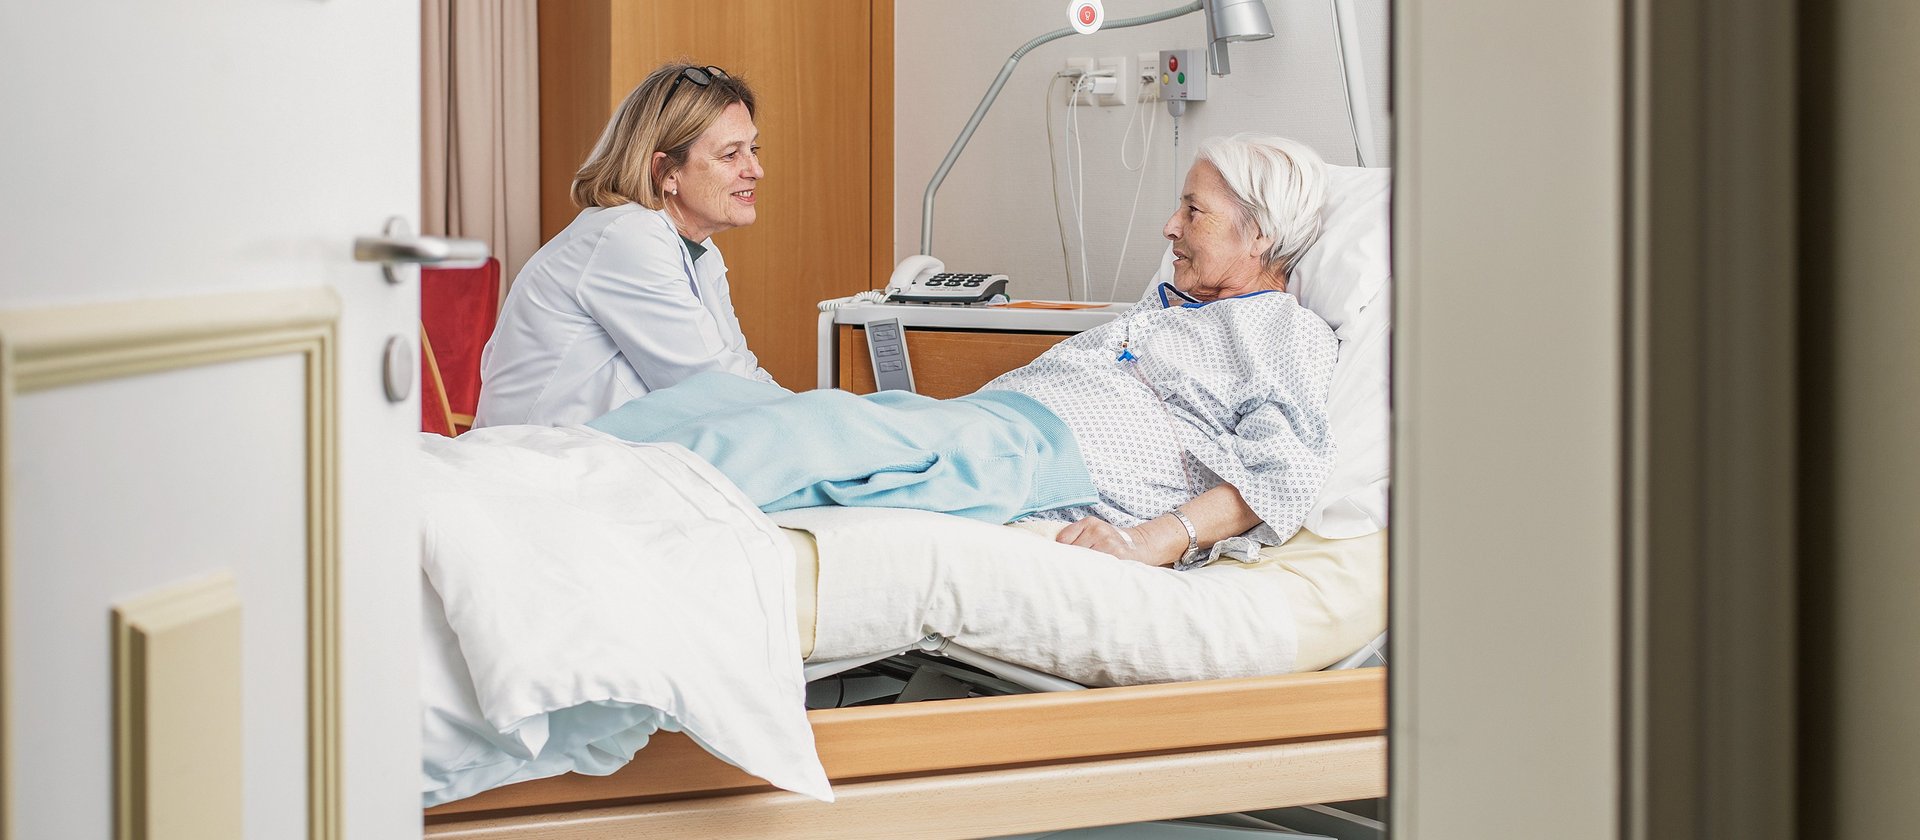 Klinik Susenberg: Gespräch mit Patientin am Krankenbett